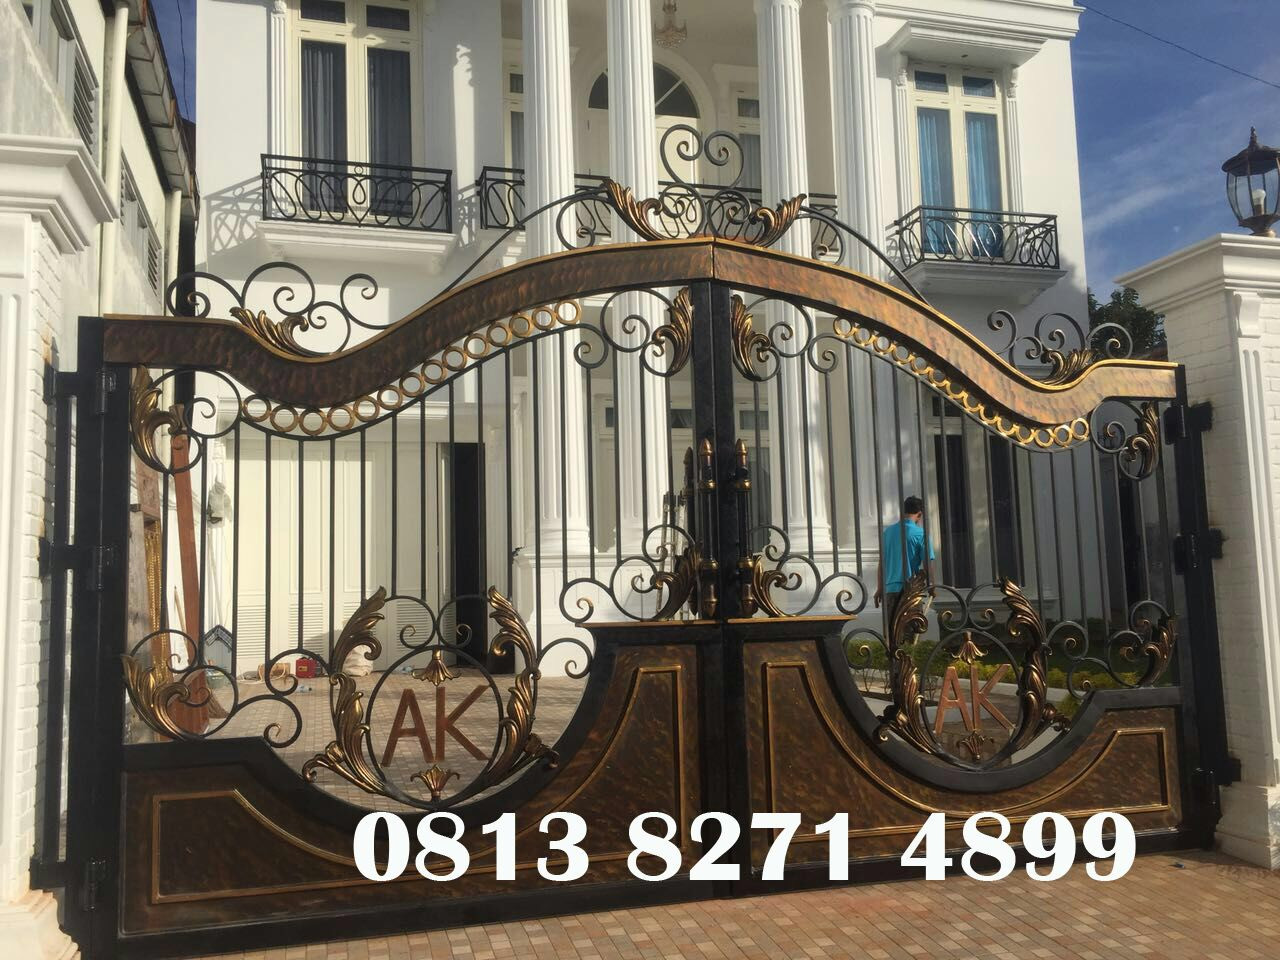 pintu gerbang pagar balkon besi tempa klasik mewah elegan